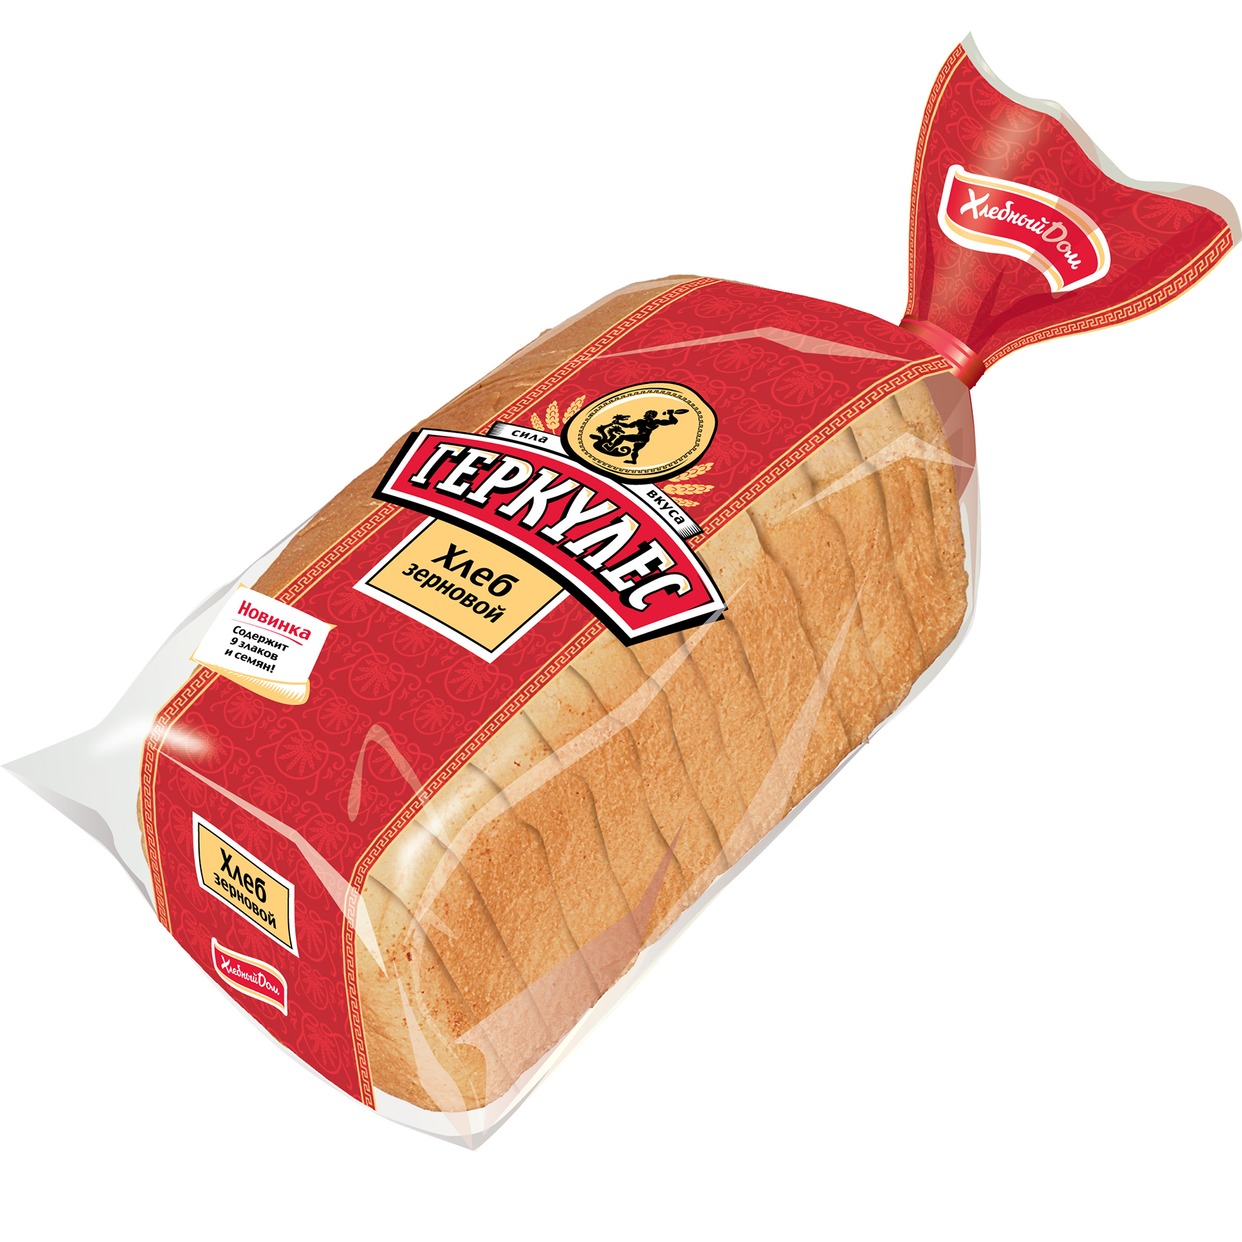 Хлеб "Хлебный Дом" Геркулес зерновой в нарезке 500г по акции в Пятерочке